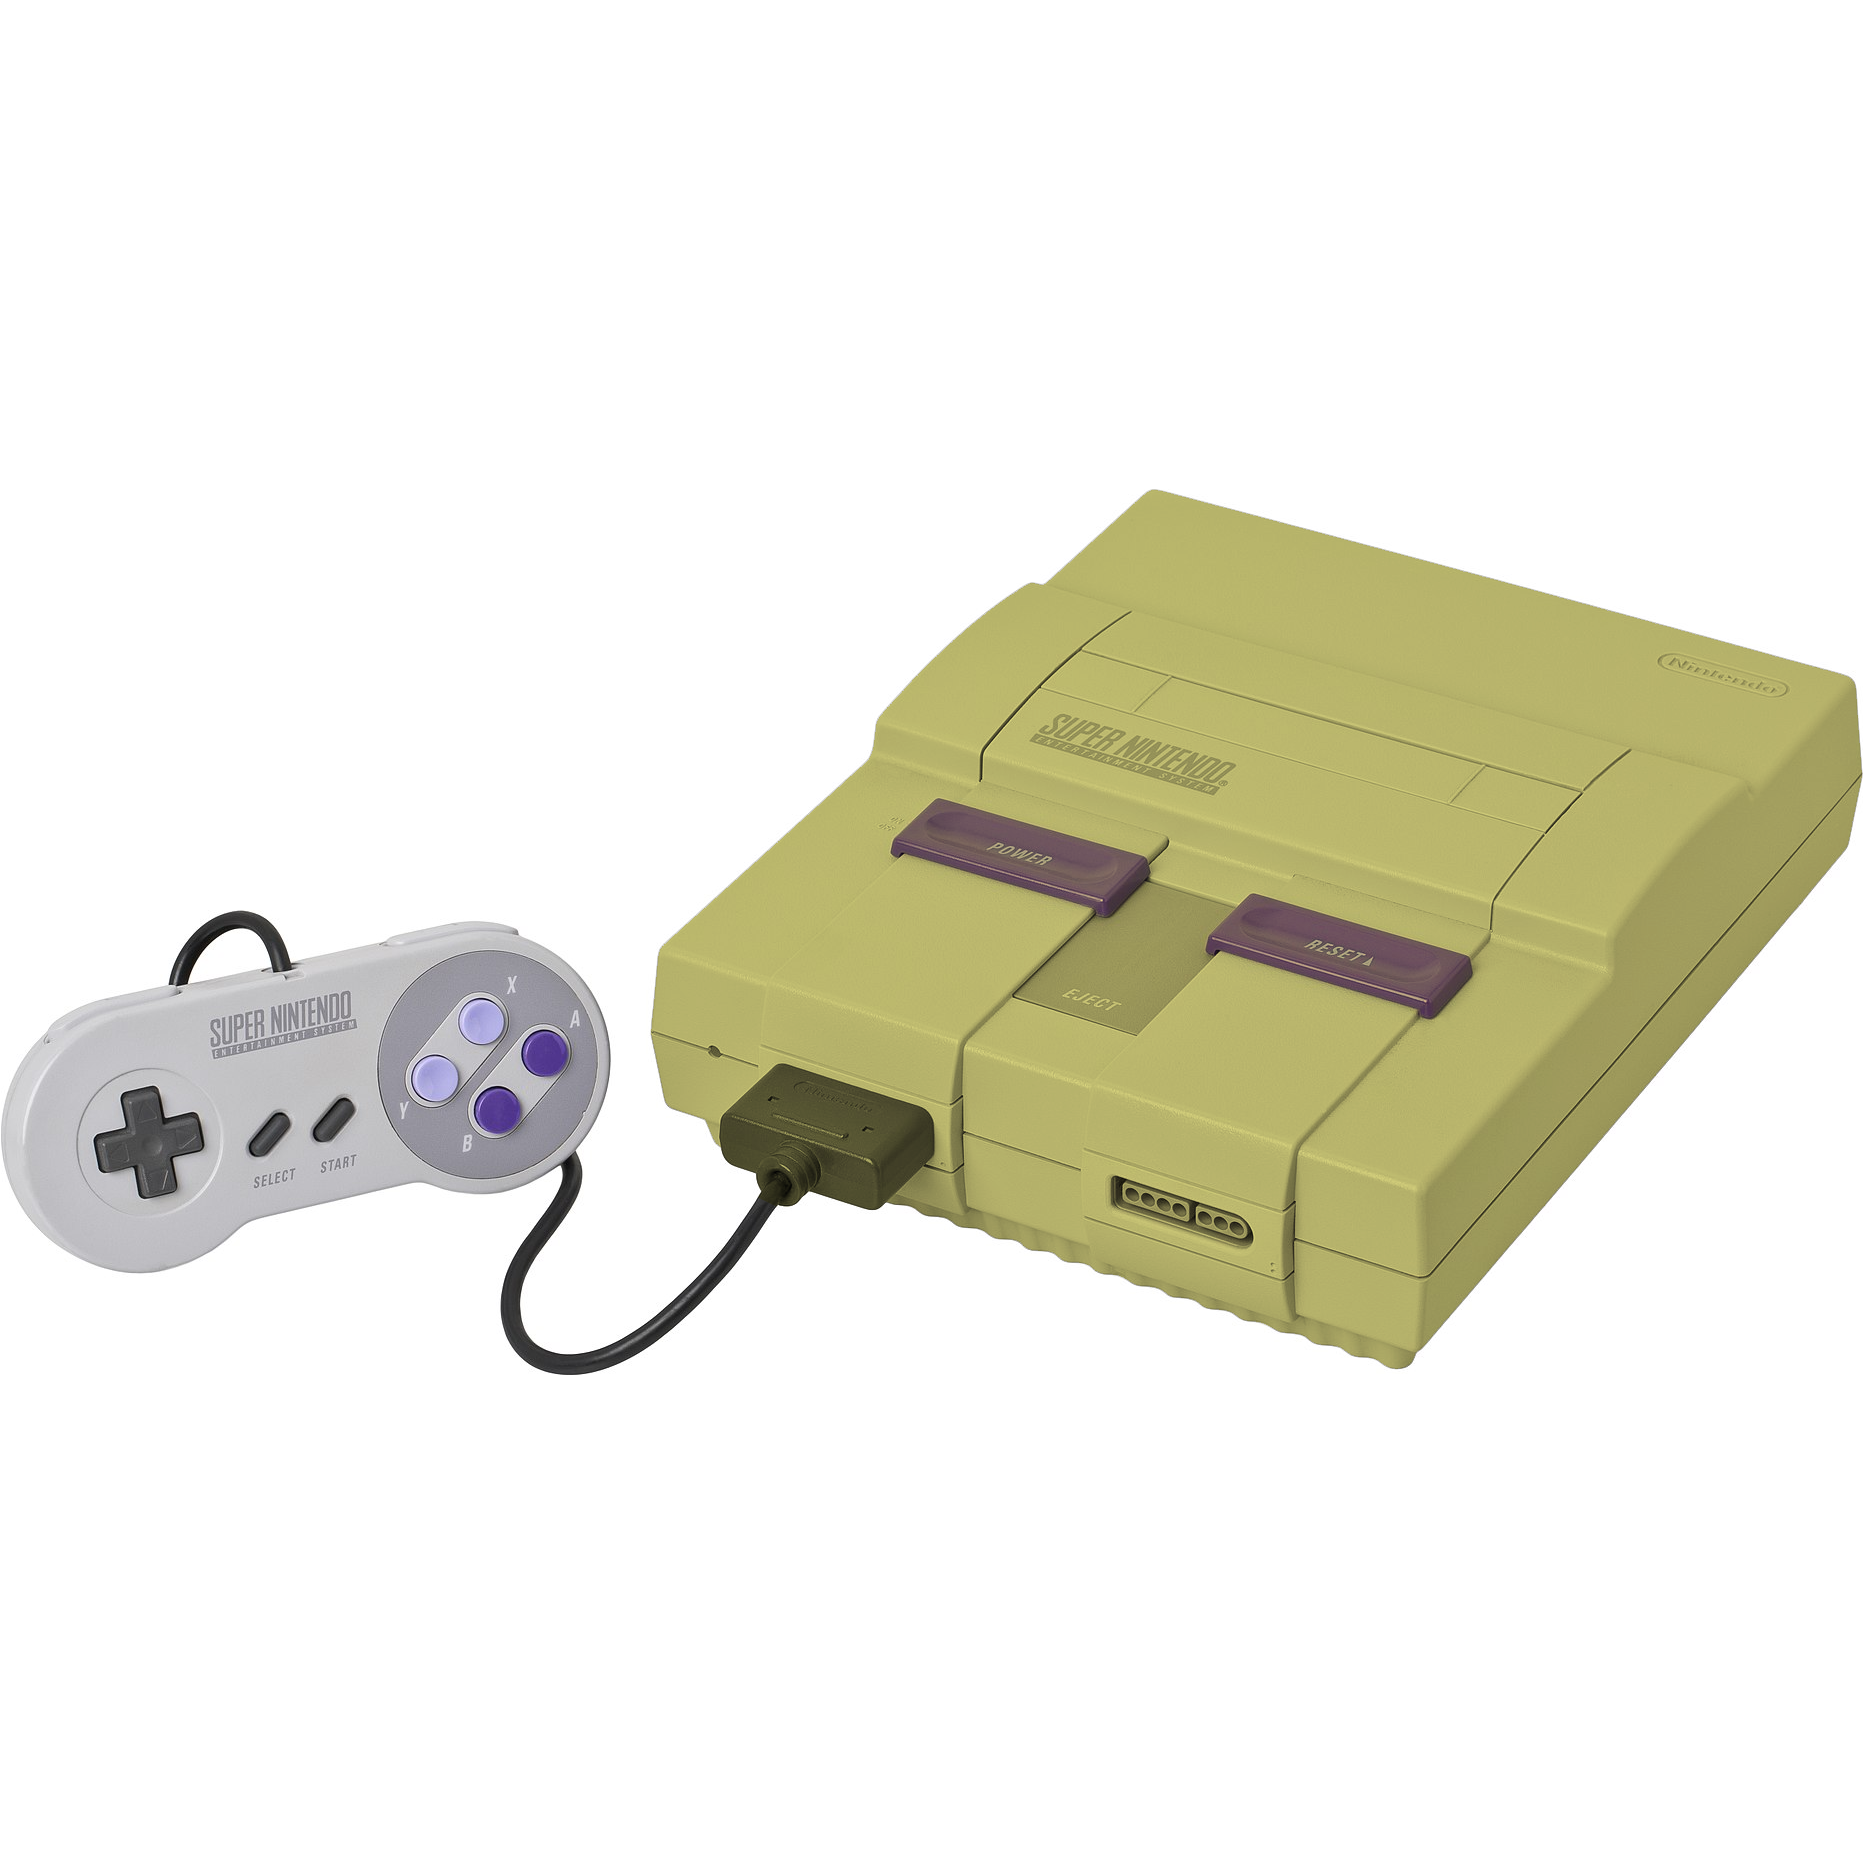 Super Nintendo Entertainment System (Grade 4)